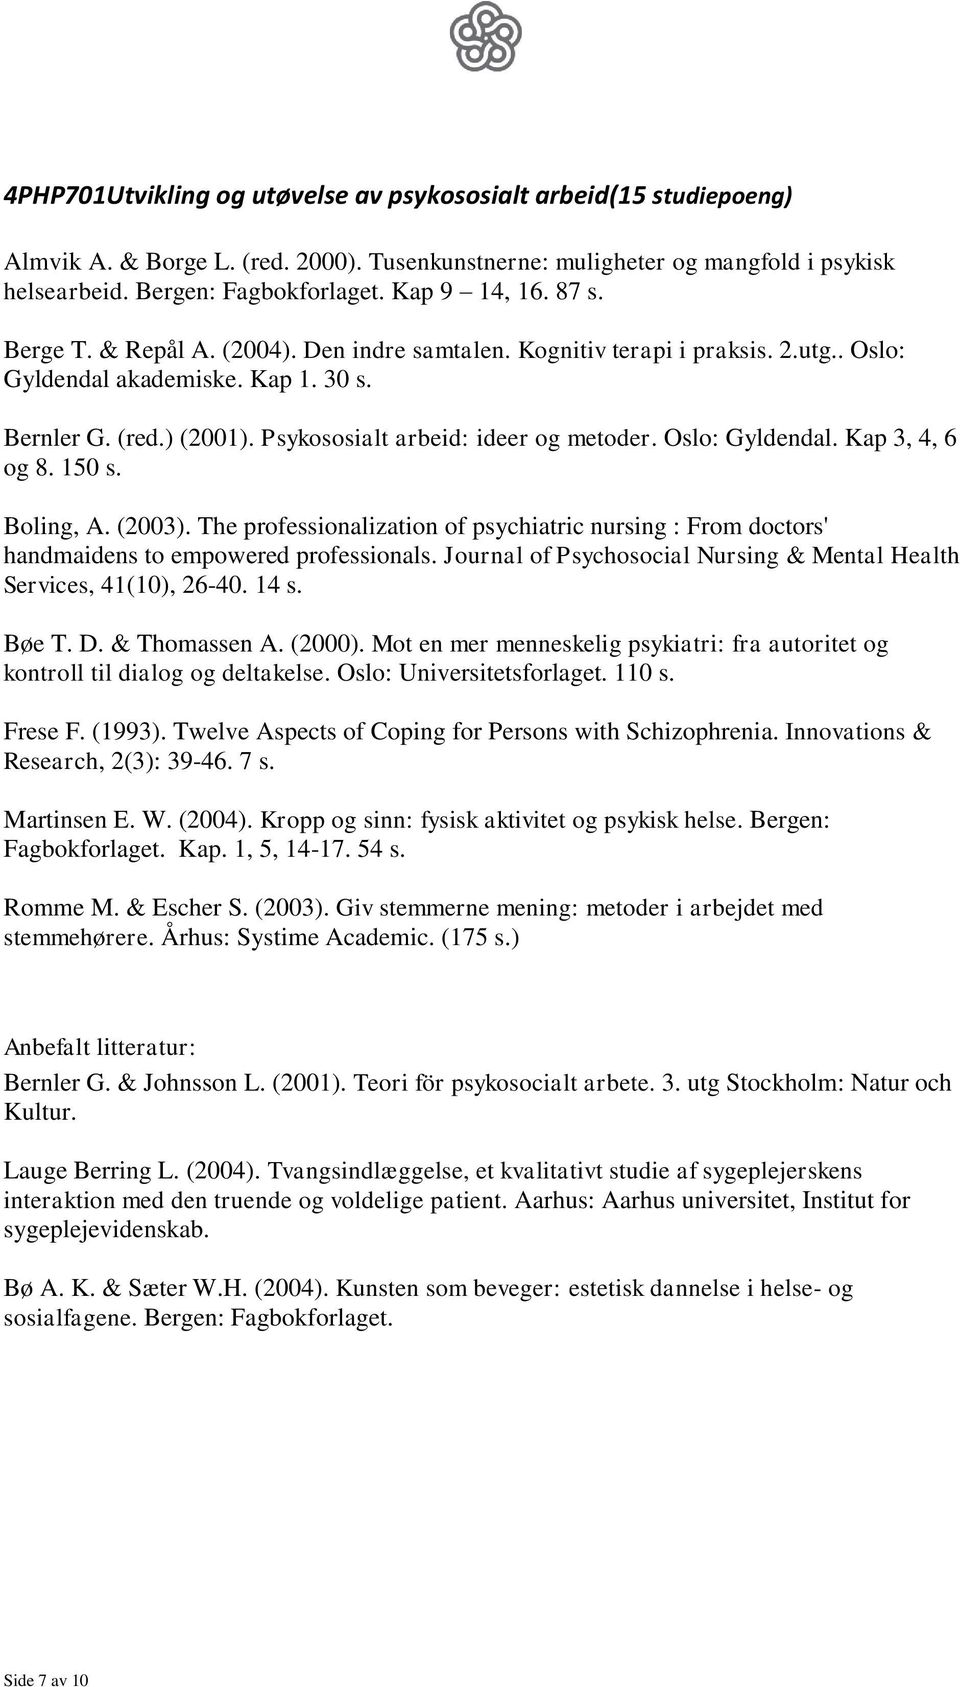 Psykososialt arbeid: ideer og metoder. Oslo: Gyldendal. Kap 3, 4, 6 og 8. 150 s. Boling, A. (2003).